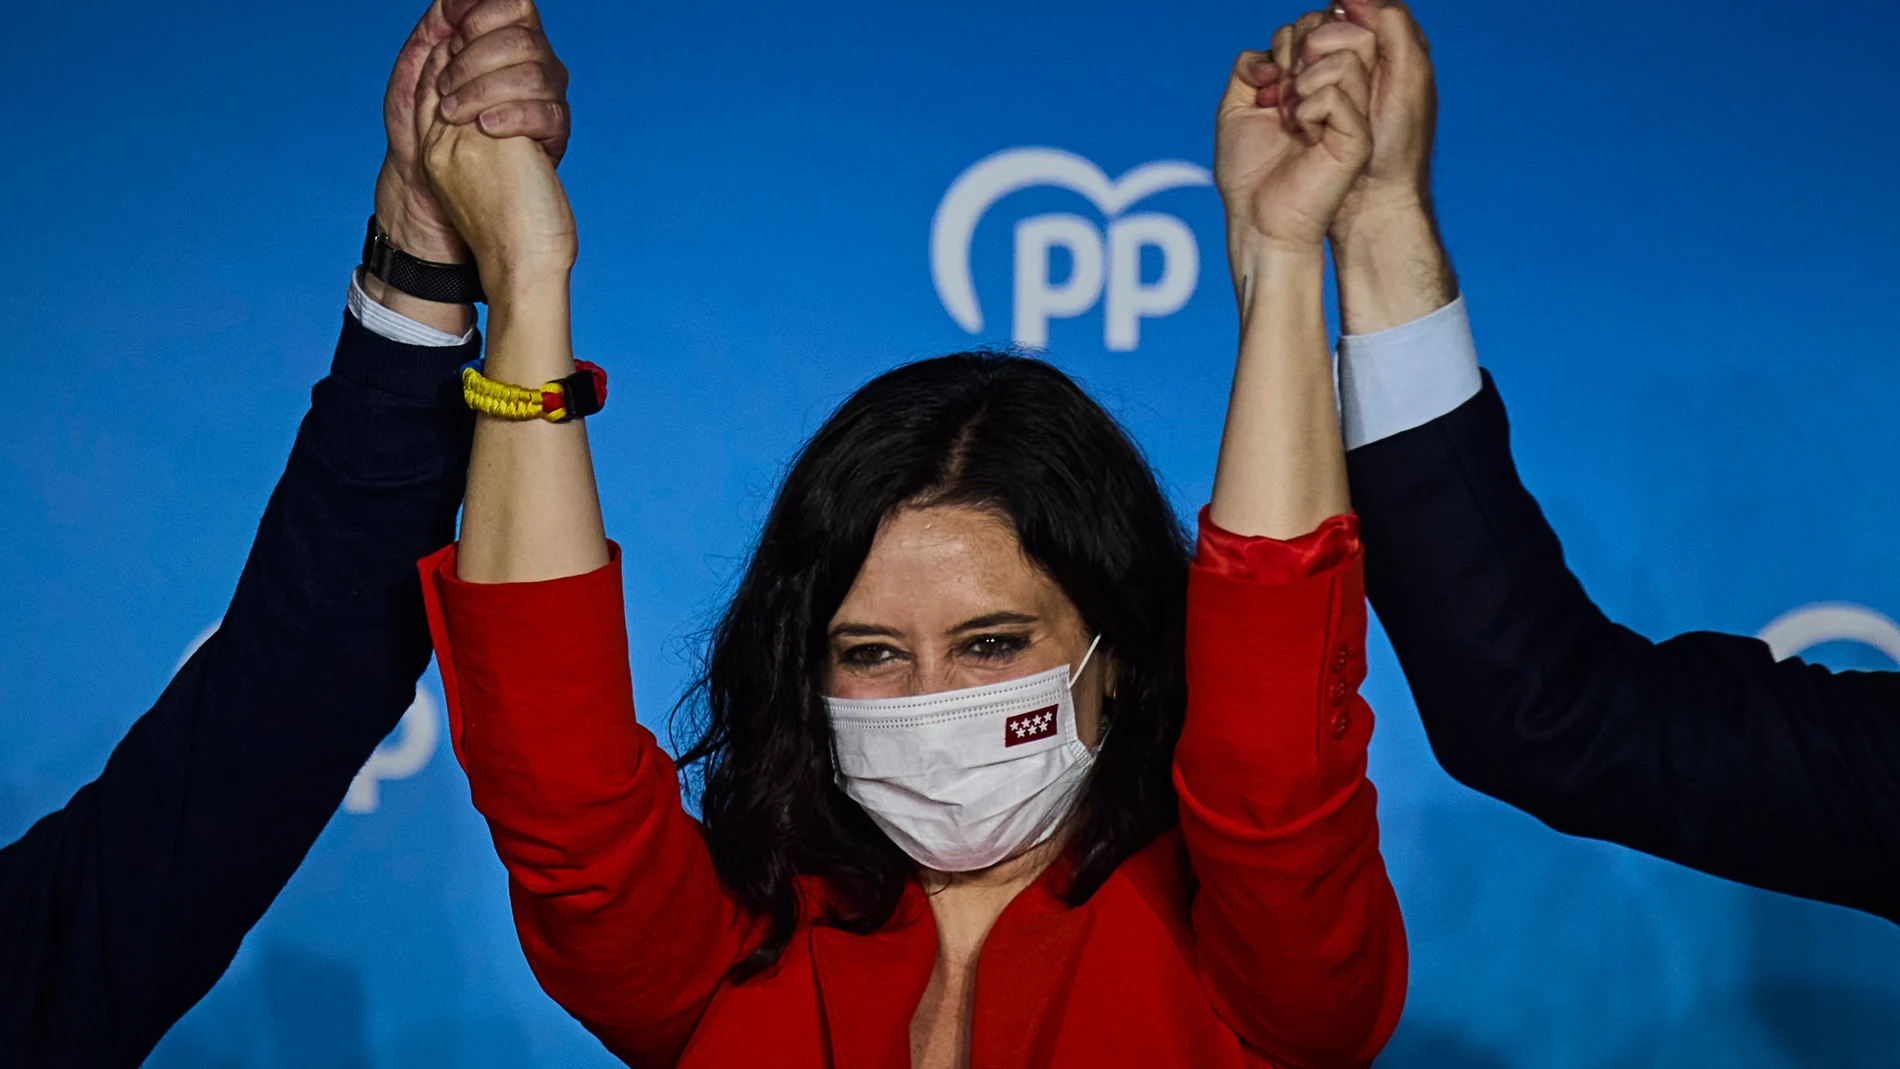 Noche electoral en la sede del PP con una triunfadora Isabel Diaz Ayuso